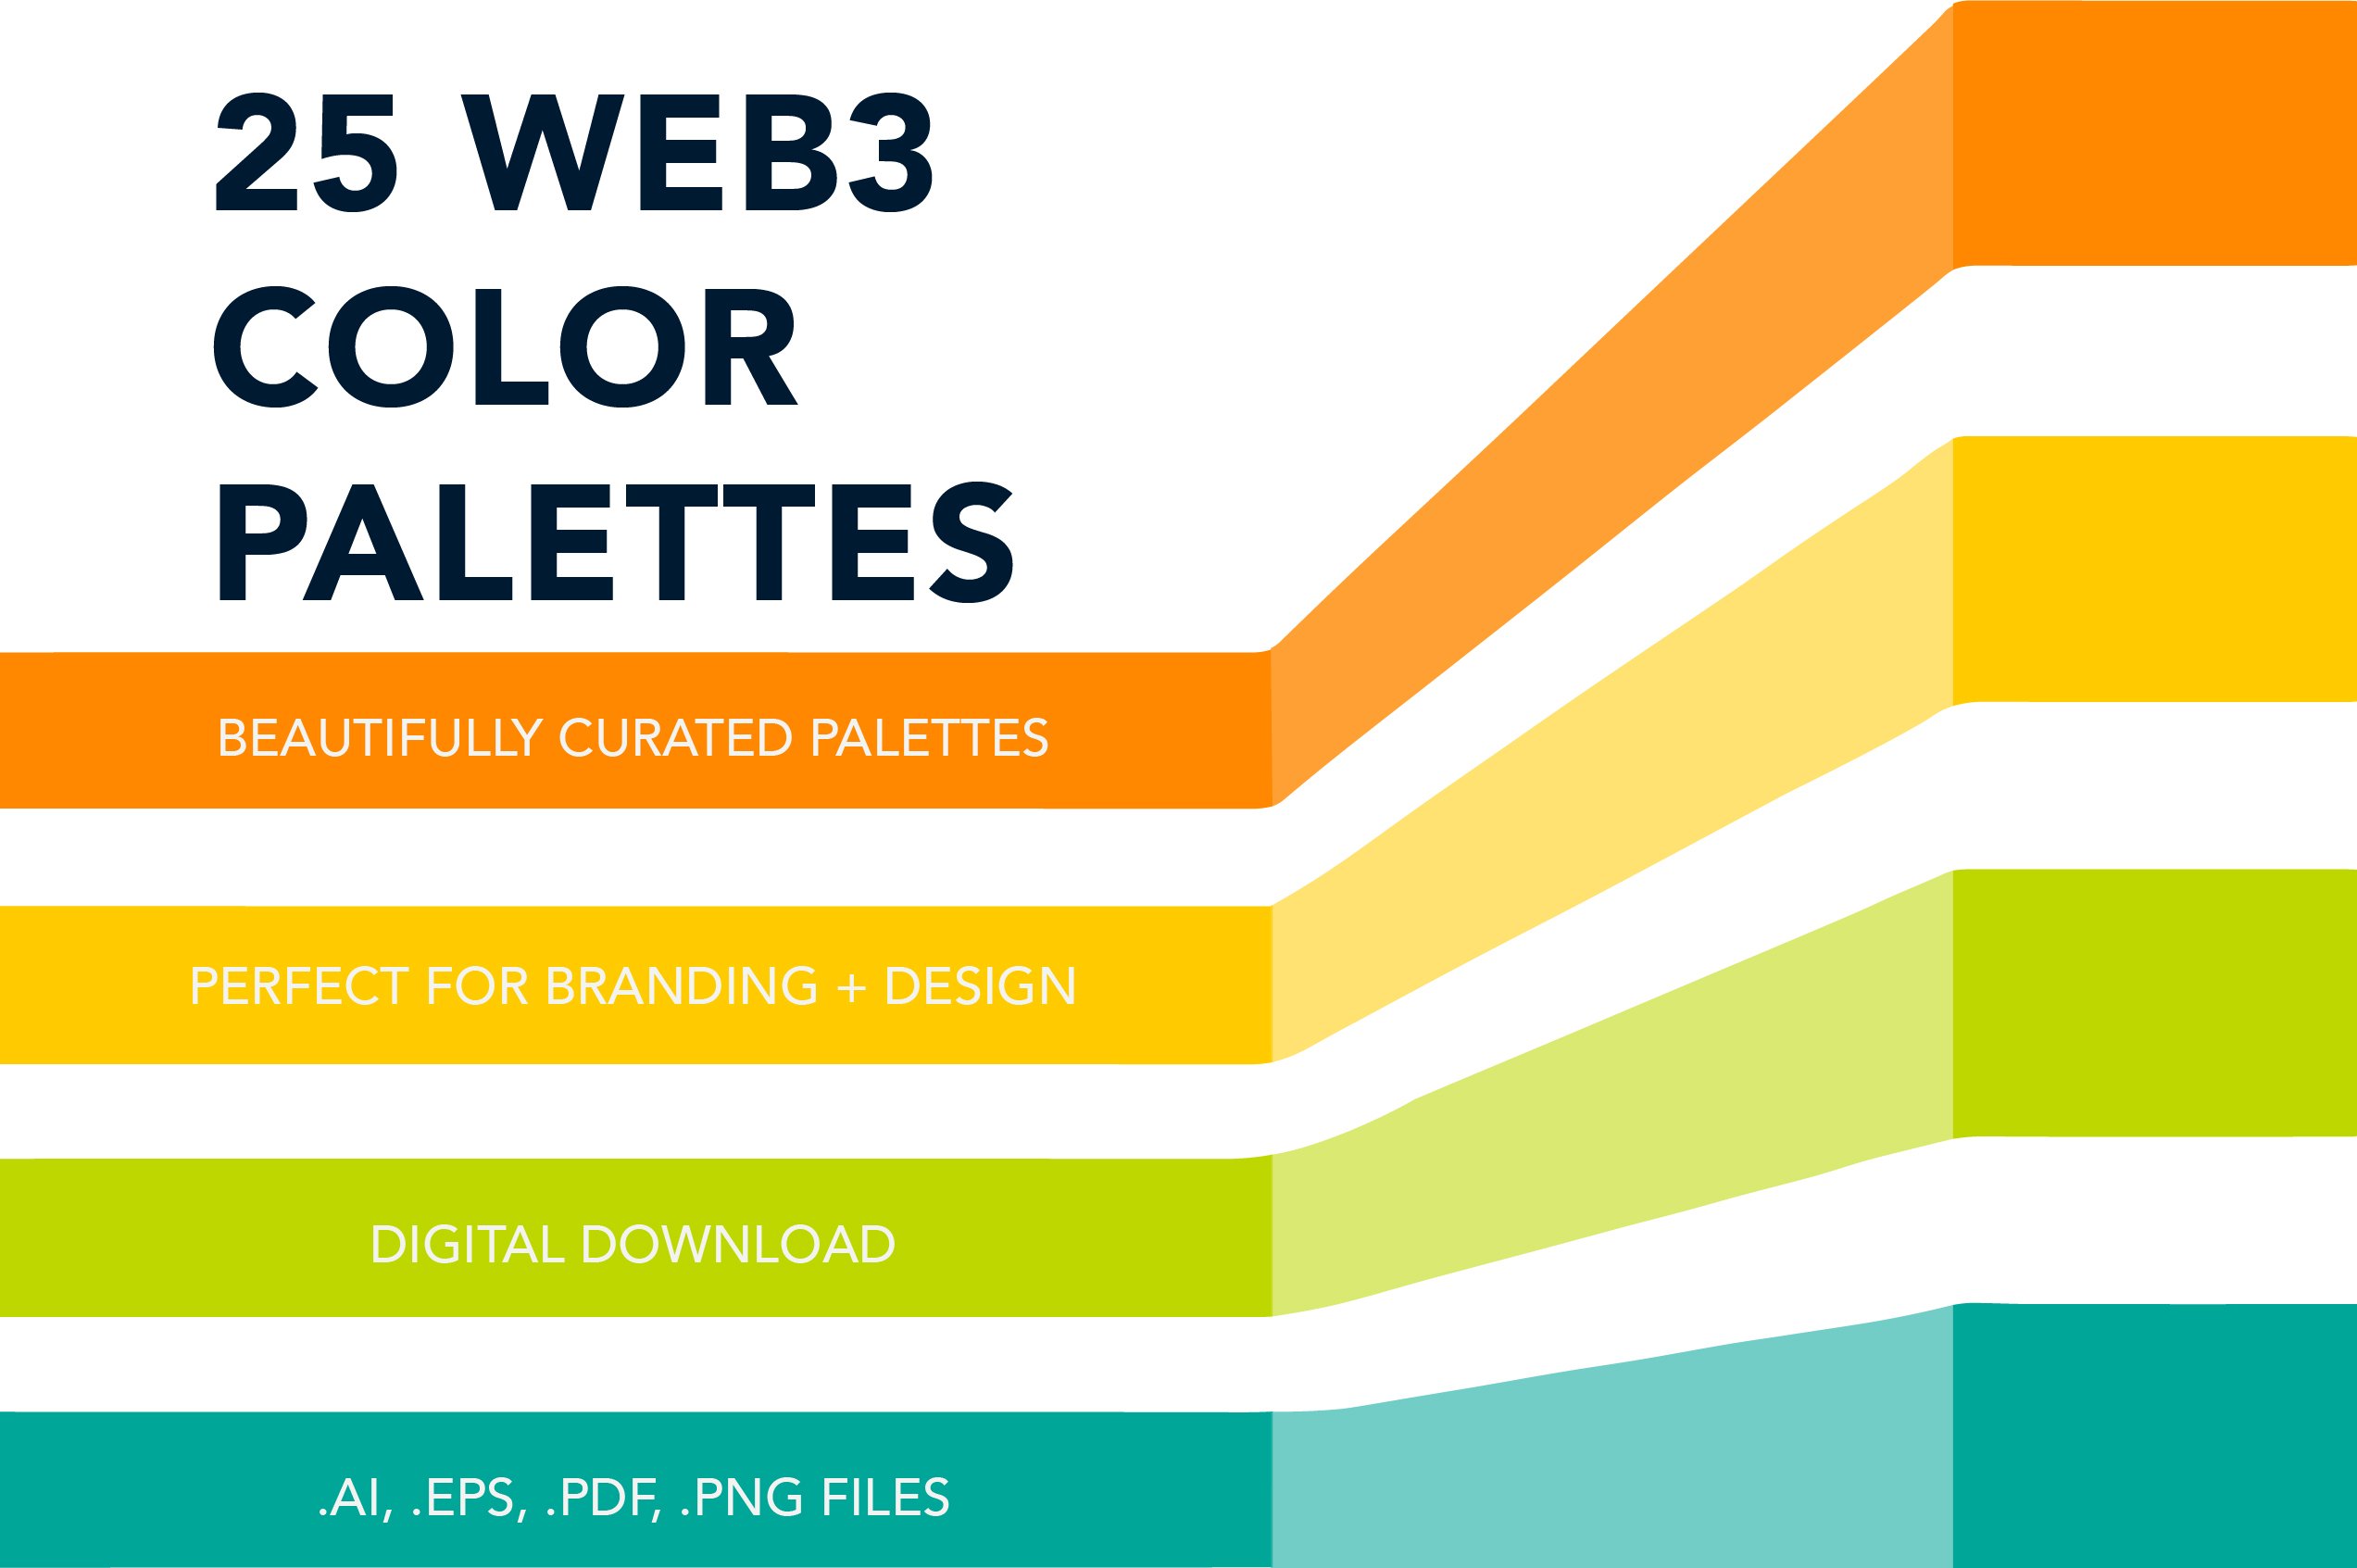 25 Web3 Color Palettespreview image.